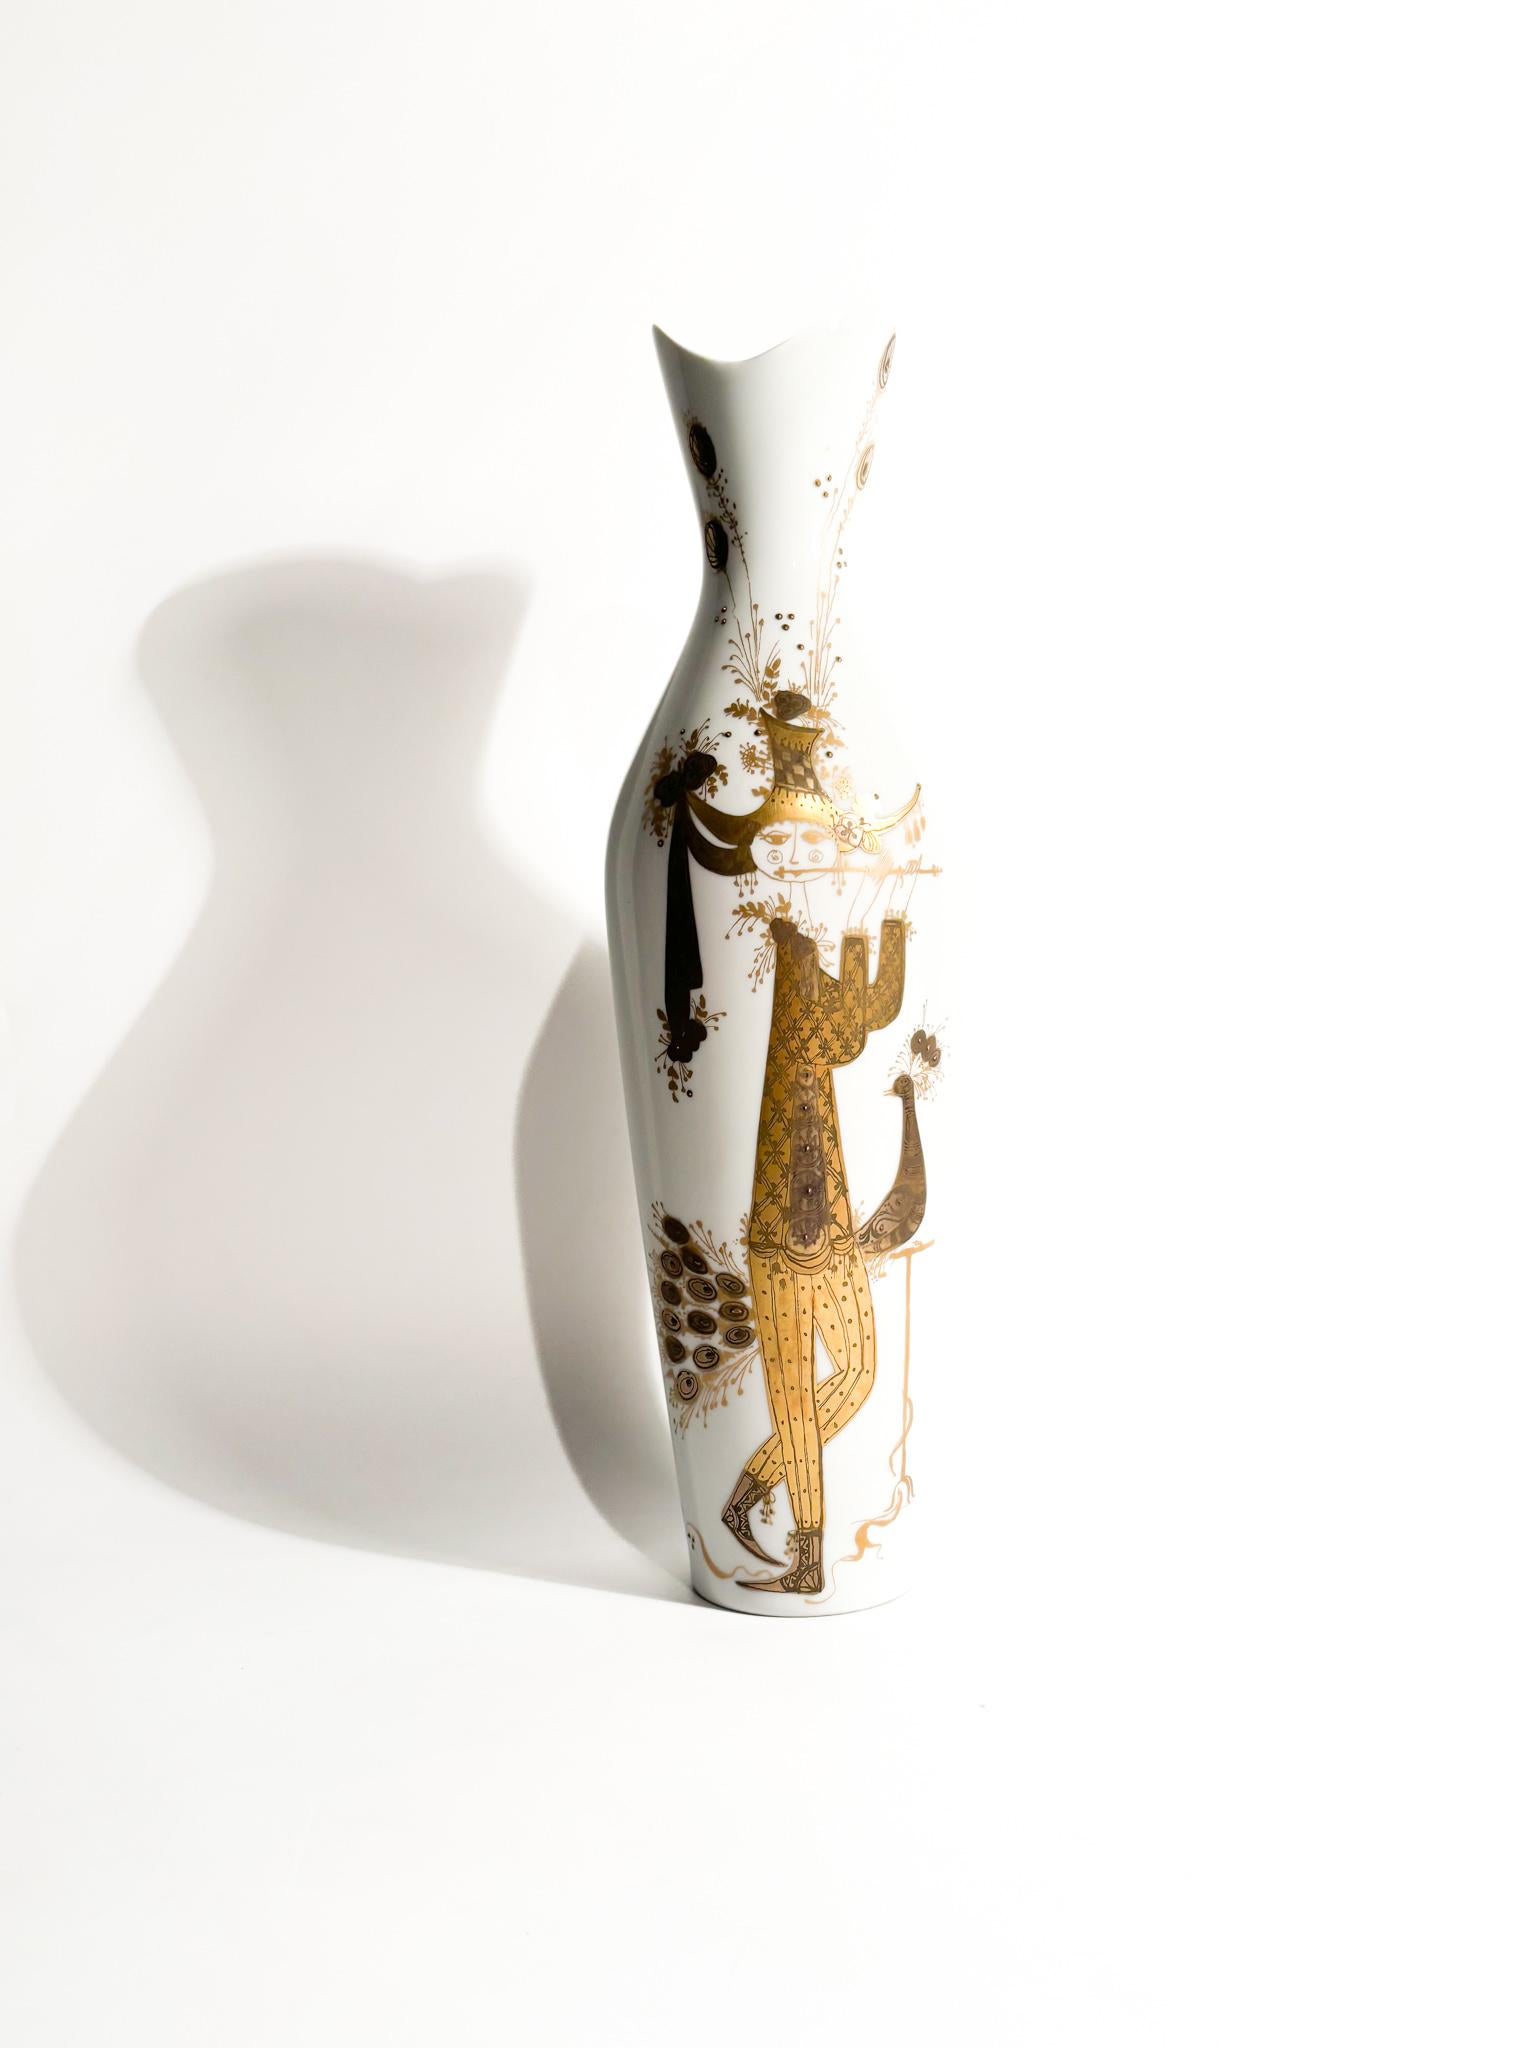 Vase en porcelaine de Rosenthal, collection Quatre Couleurs conçue par Bjorn Wiinblad dans les années 1960.

Ø 9 cm h 33 cm

Rosenthal est une entreprise allemande fondée en 1879 en Bavière. Elle produit de la porcelaine et de la vaisselle. Depuis